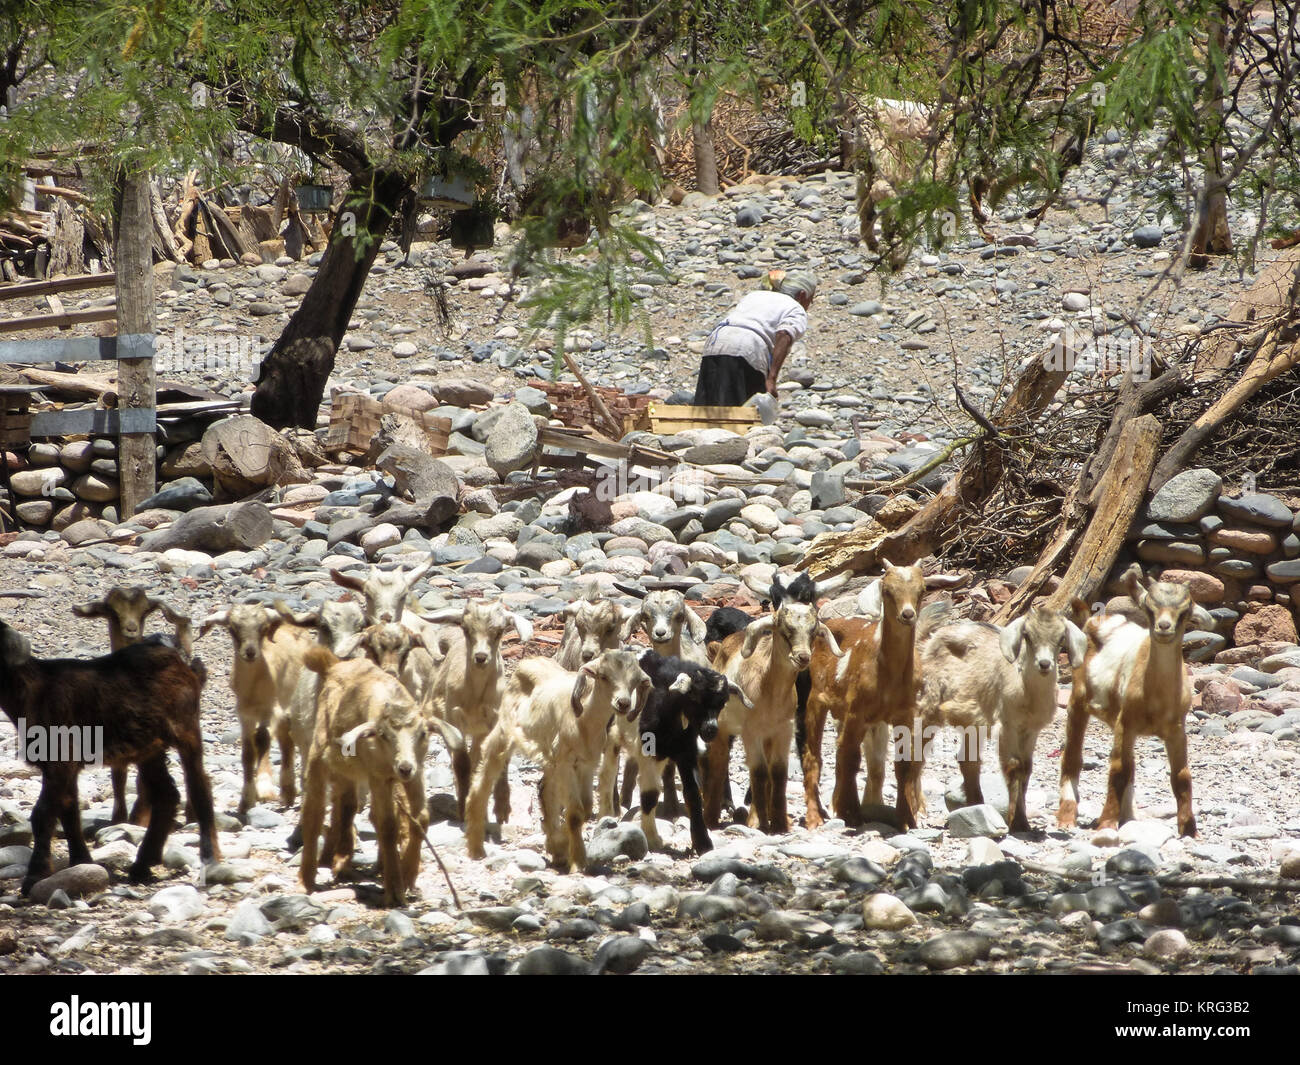 Chèvres sur ruta 40, Cafayate, Argentine. Banque D'Images